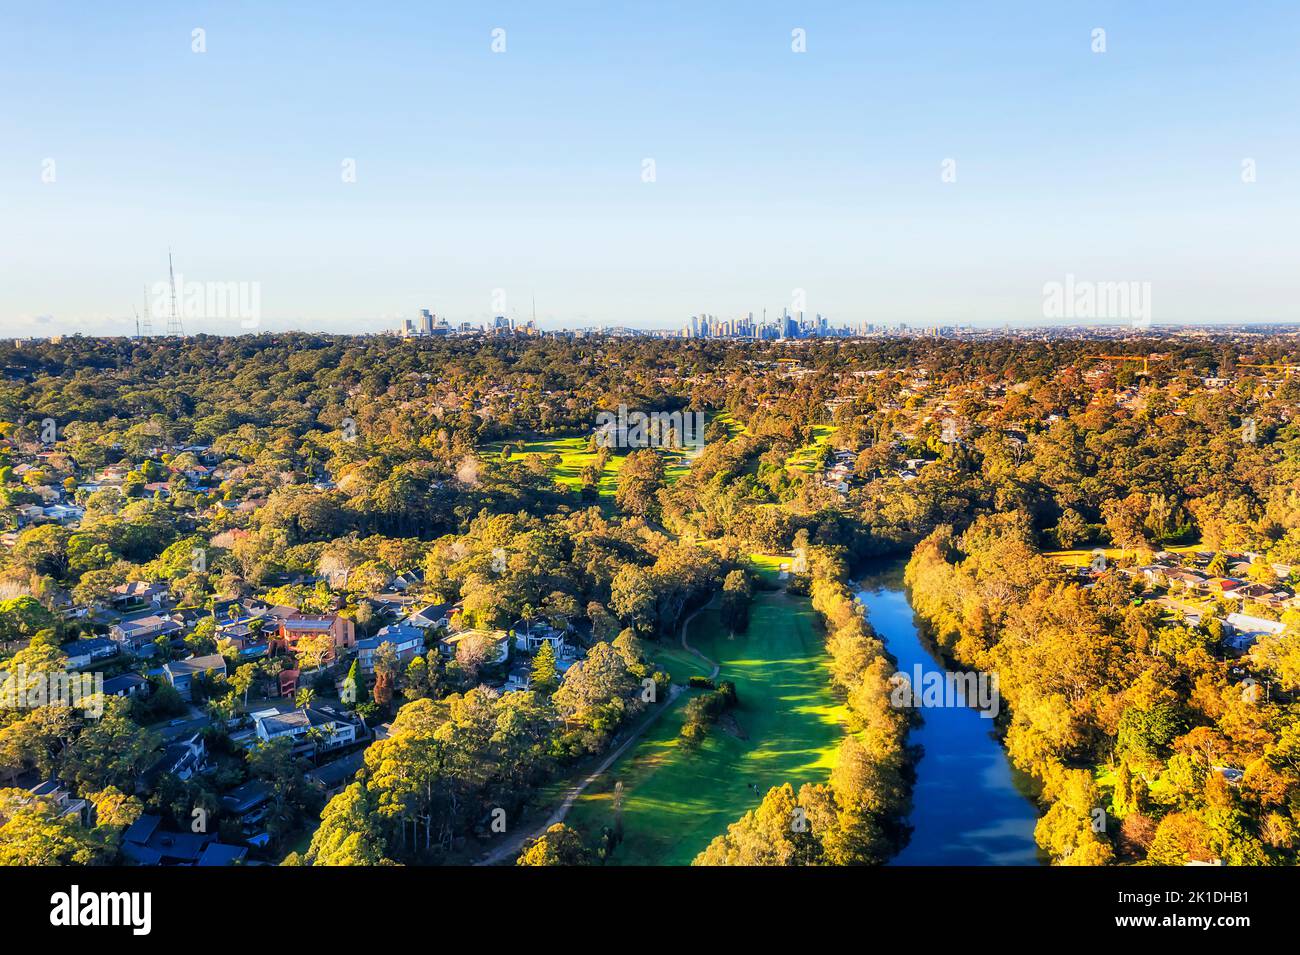 Lane Cover River und Nationalpark in Sydney - Luftbild zur Innenstadt von Sydney. Stockfoto